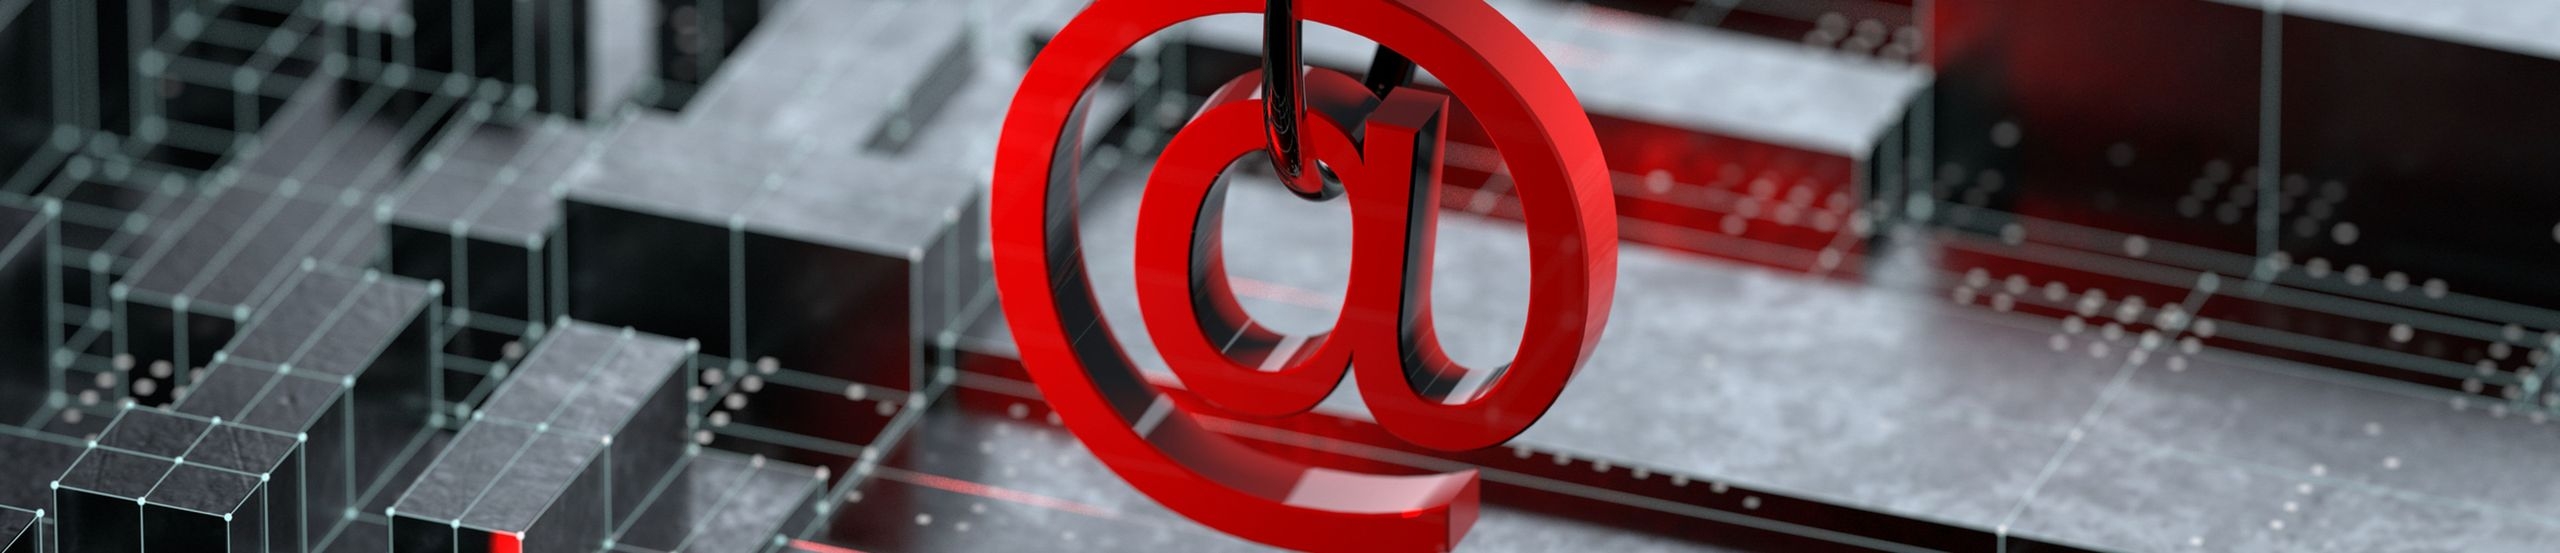 Ein rotes E-Mail-Symbol hängt an einem Angelhaken, darunter befinden sich schwarze stilisierte Quader.